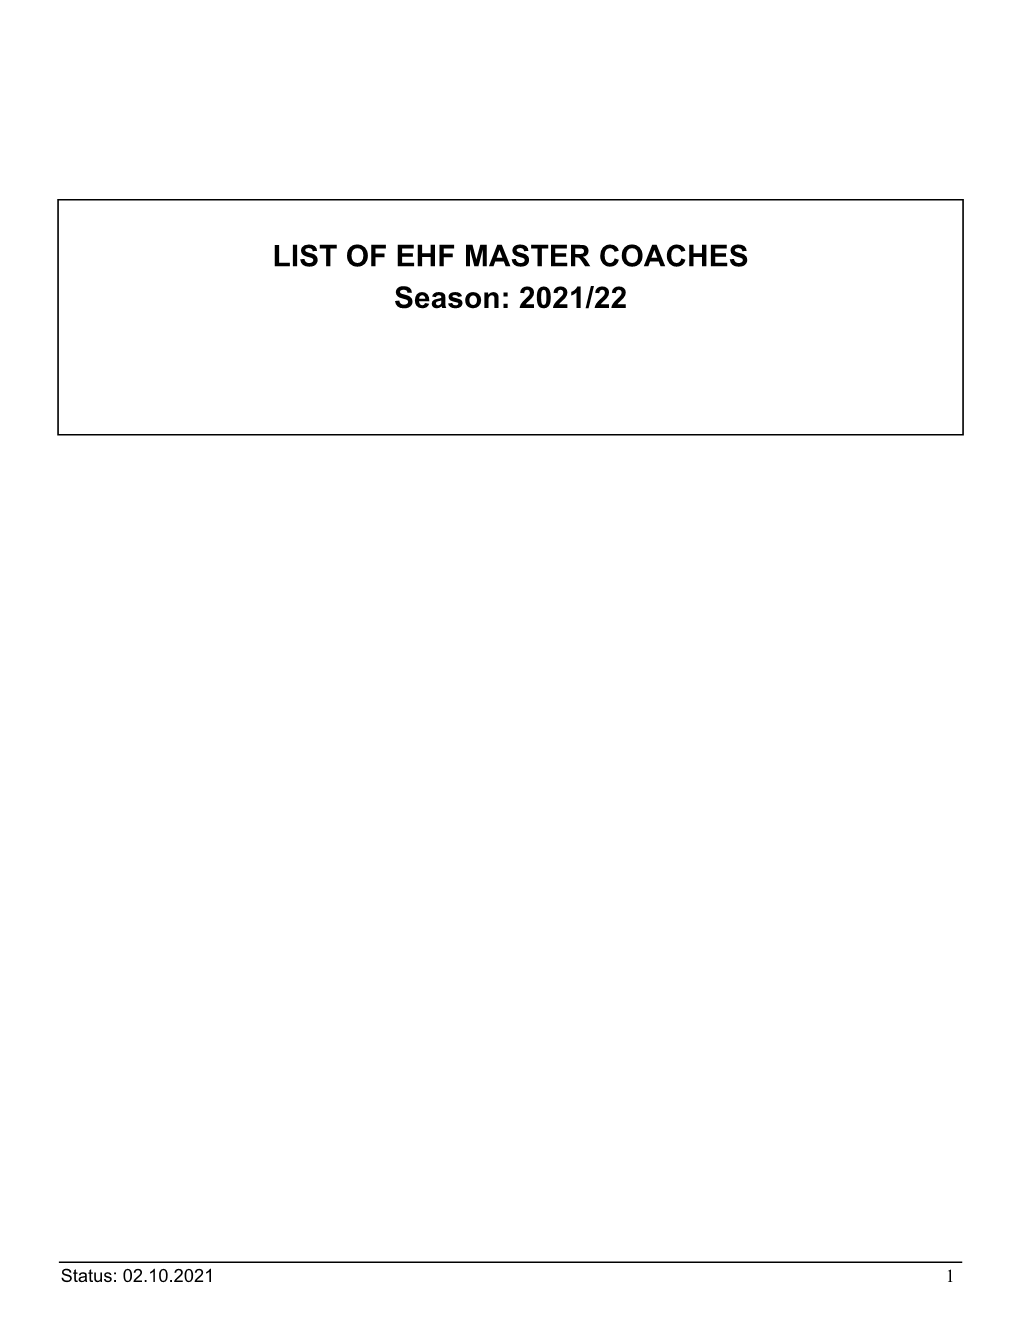 LIST of EHF MASTER COACHES Season: 2021/22